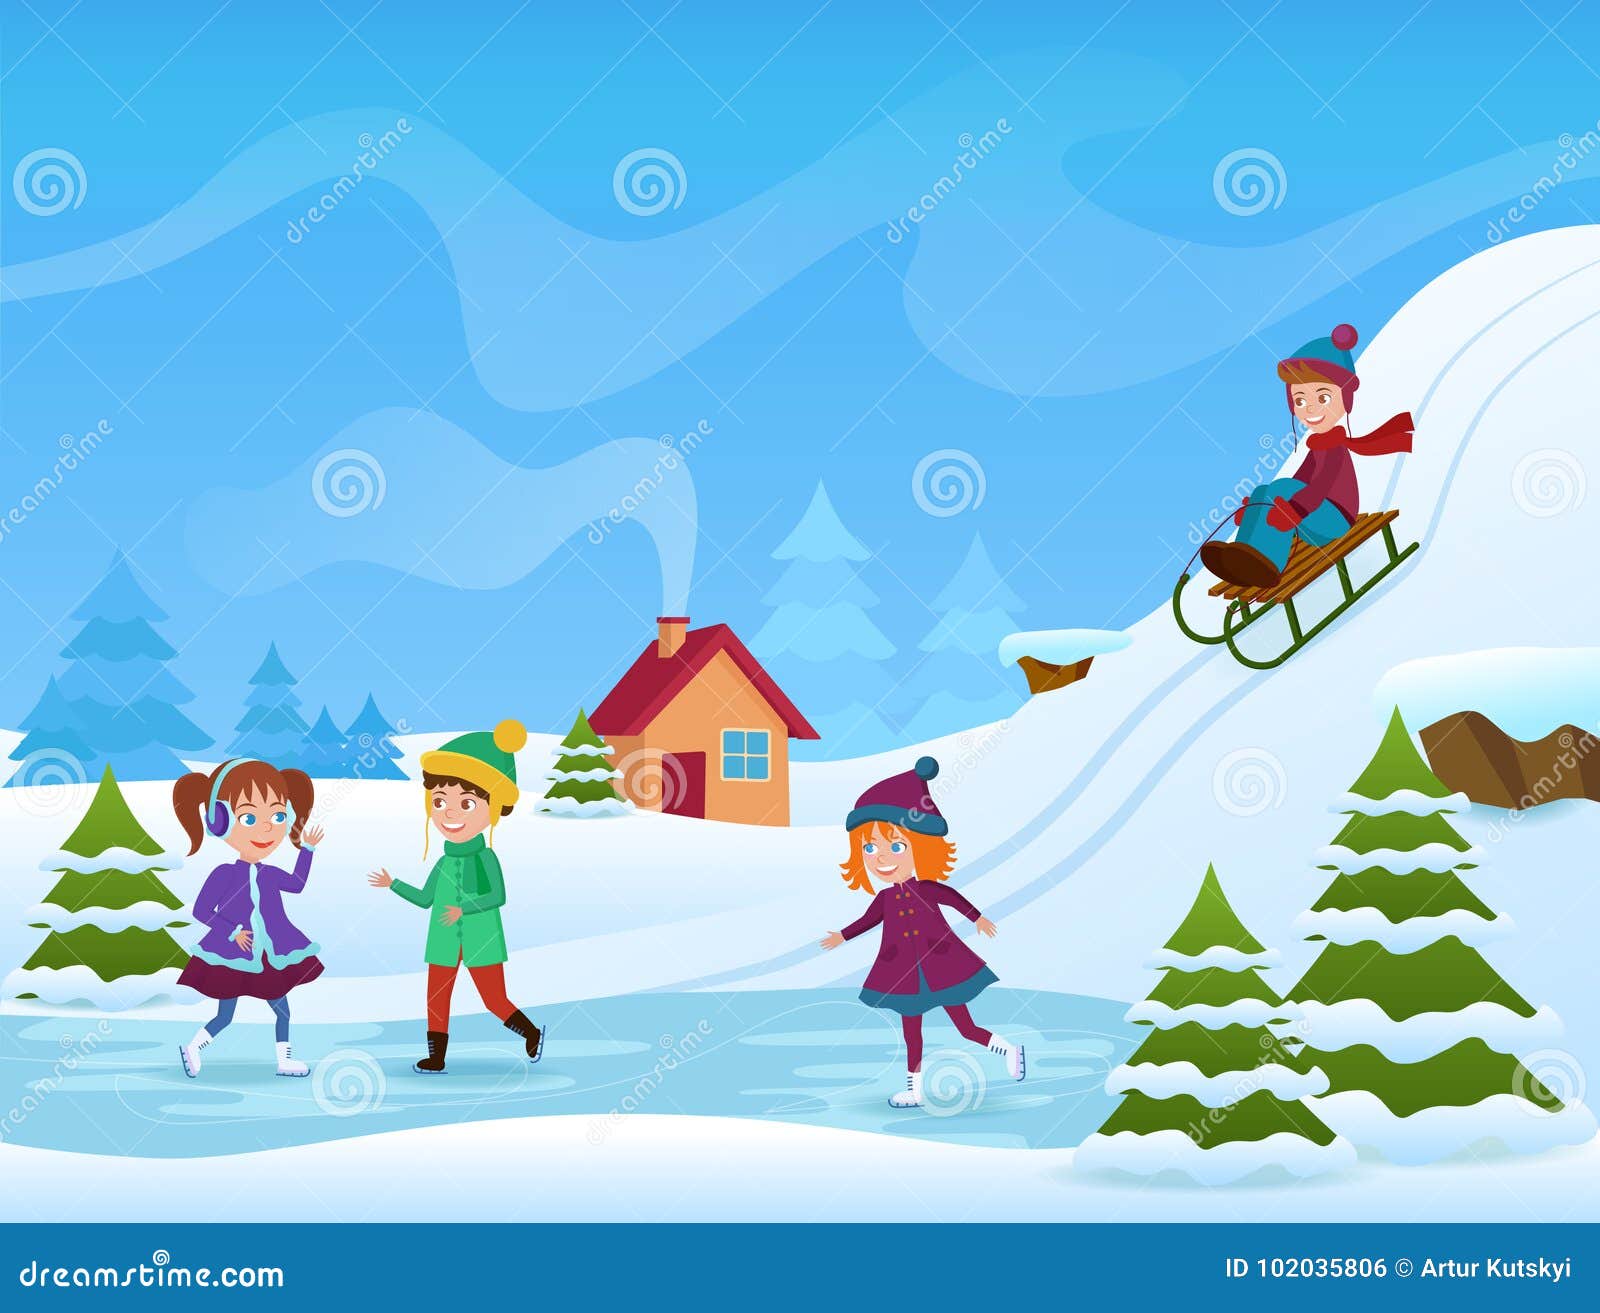 Dirigez l'illustration du patinage de glace gai d'enfants et de sledging en hiver Carte de holifays d'hiver